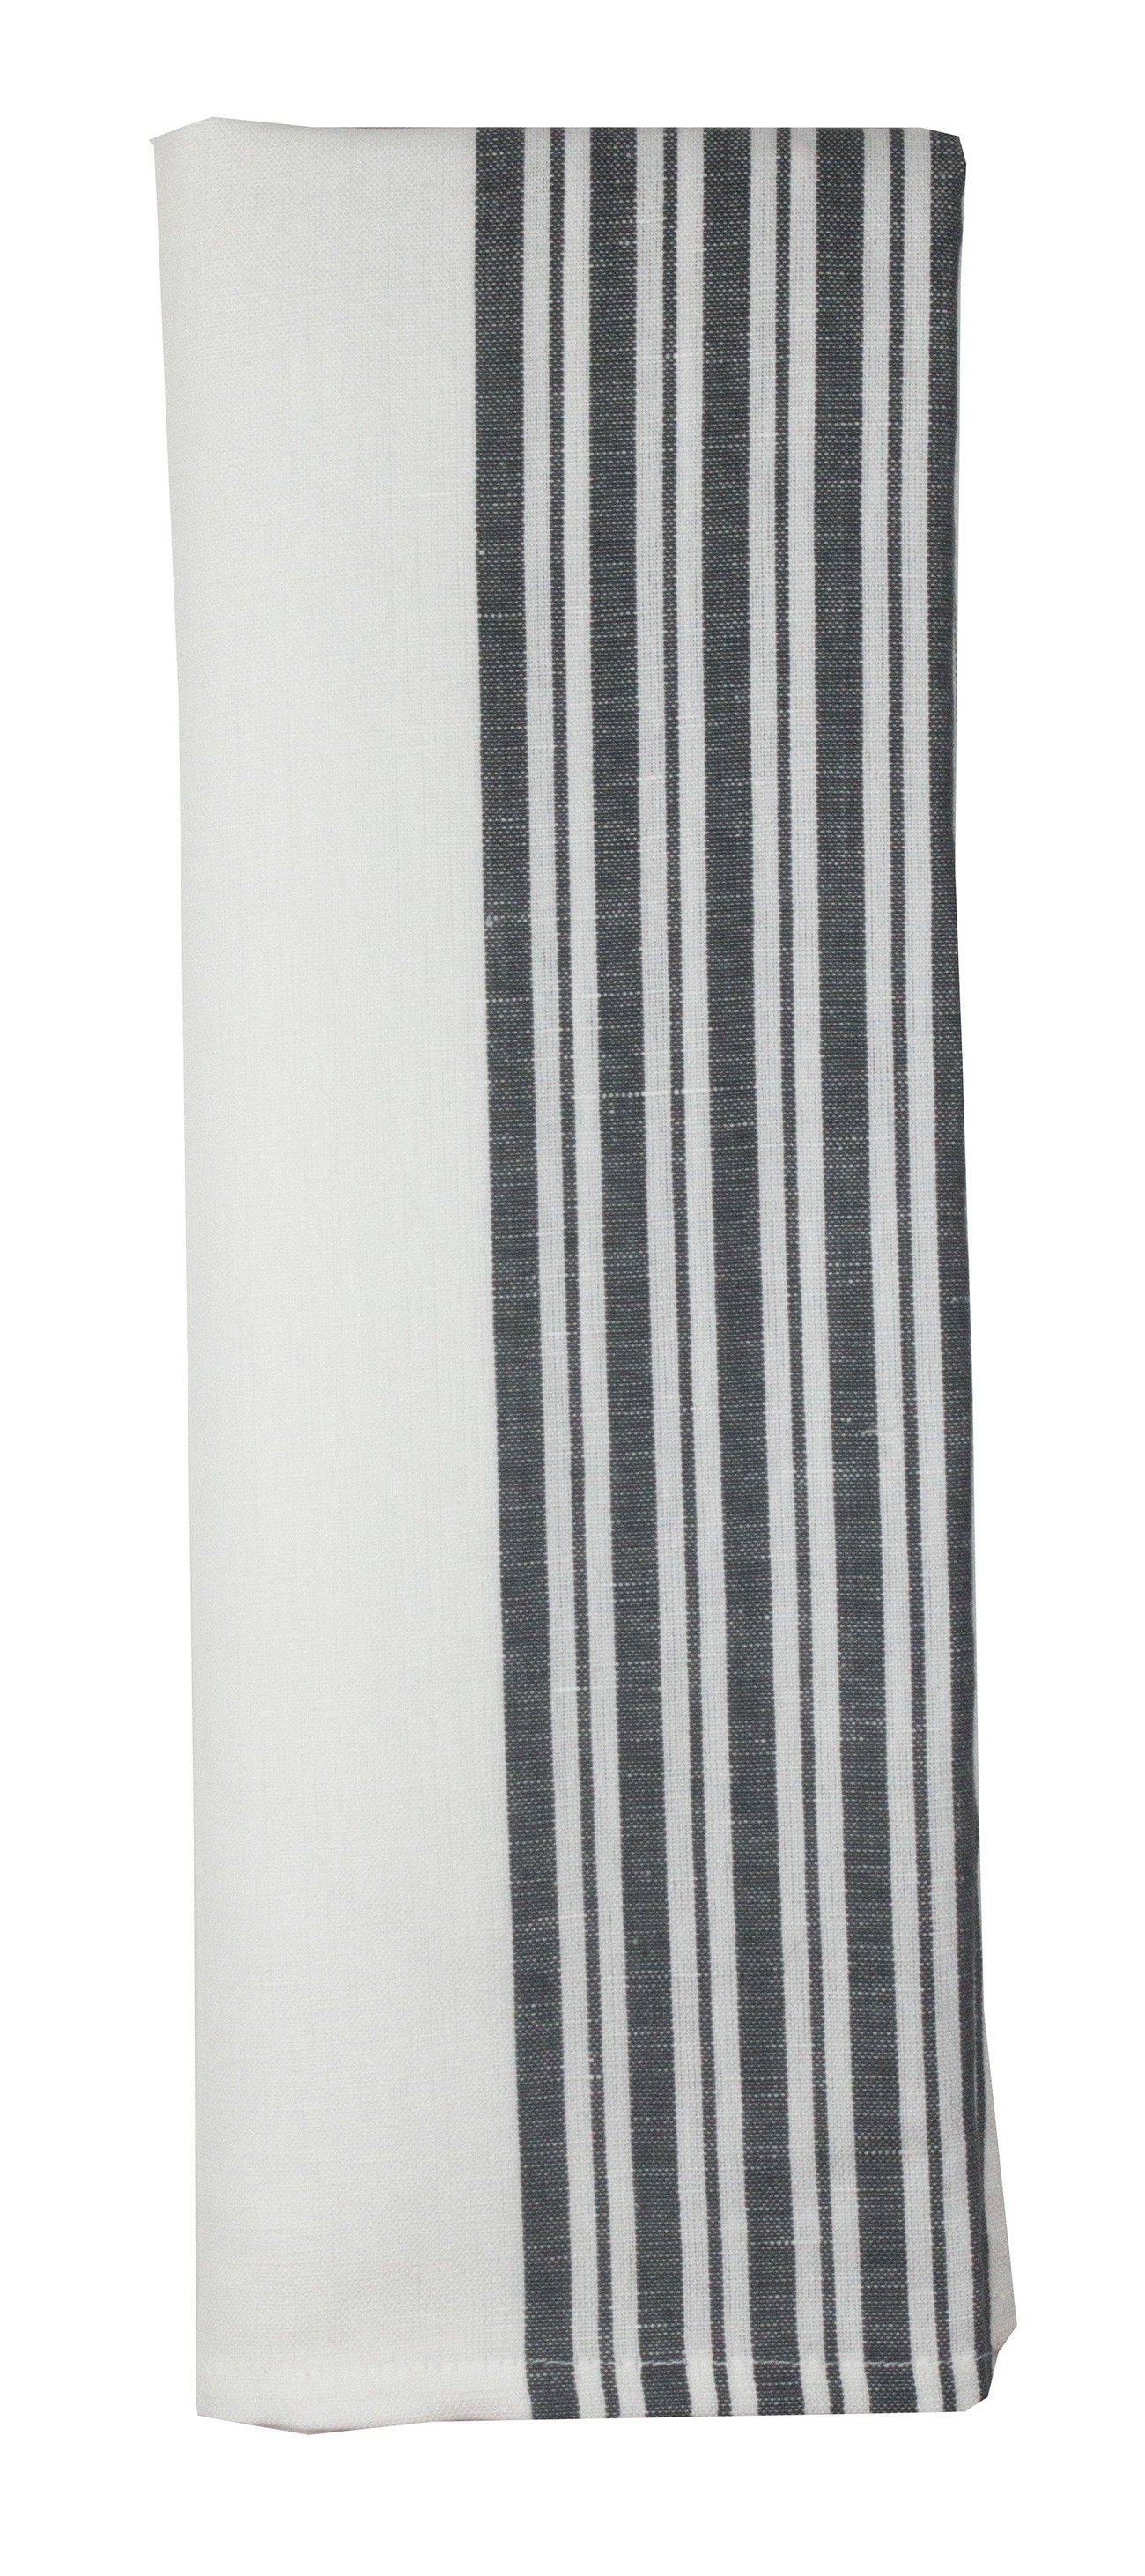 Cotton Linen Stripe Charcoal/White